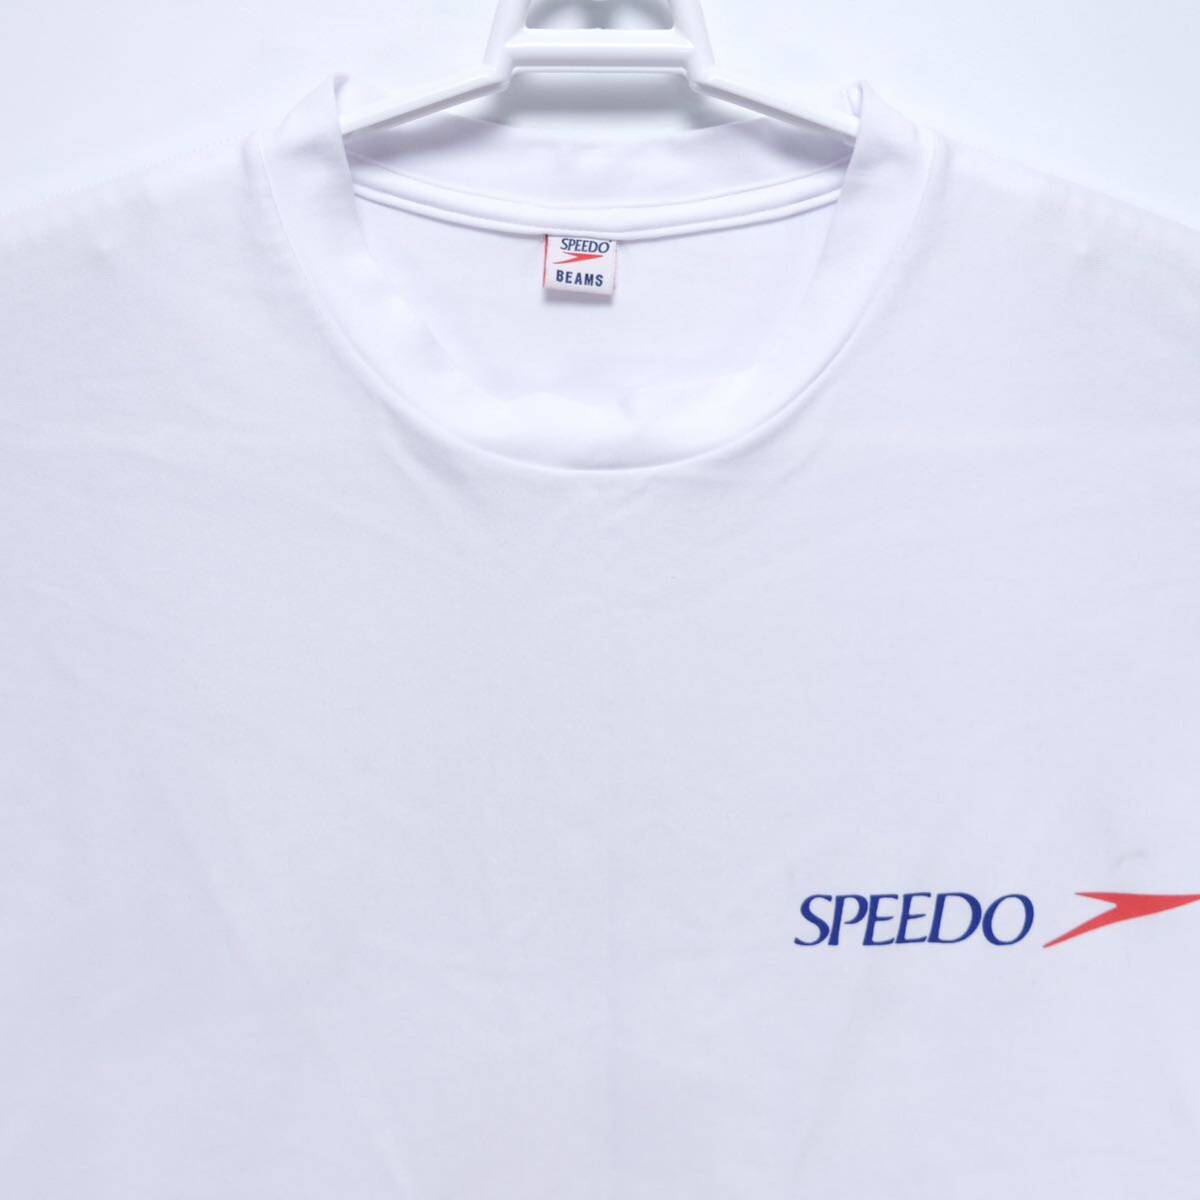 【送料無料】Speedo(スピード)×BEAMS(ビームス) Collaboration Collection 2020/別注 US RUSH Tシャツ/SA32054BE/ホワイト/Mサイズ